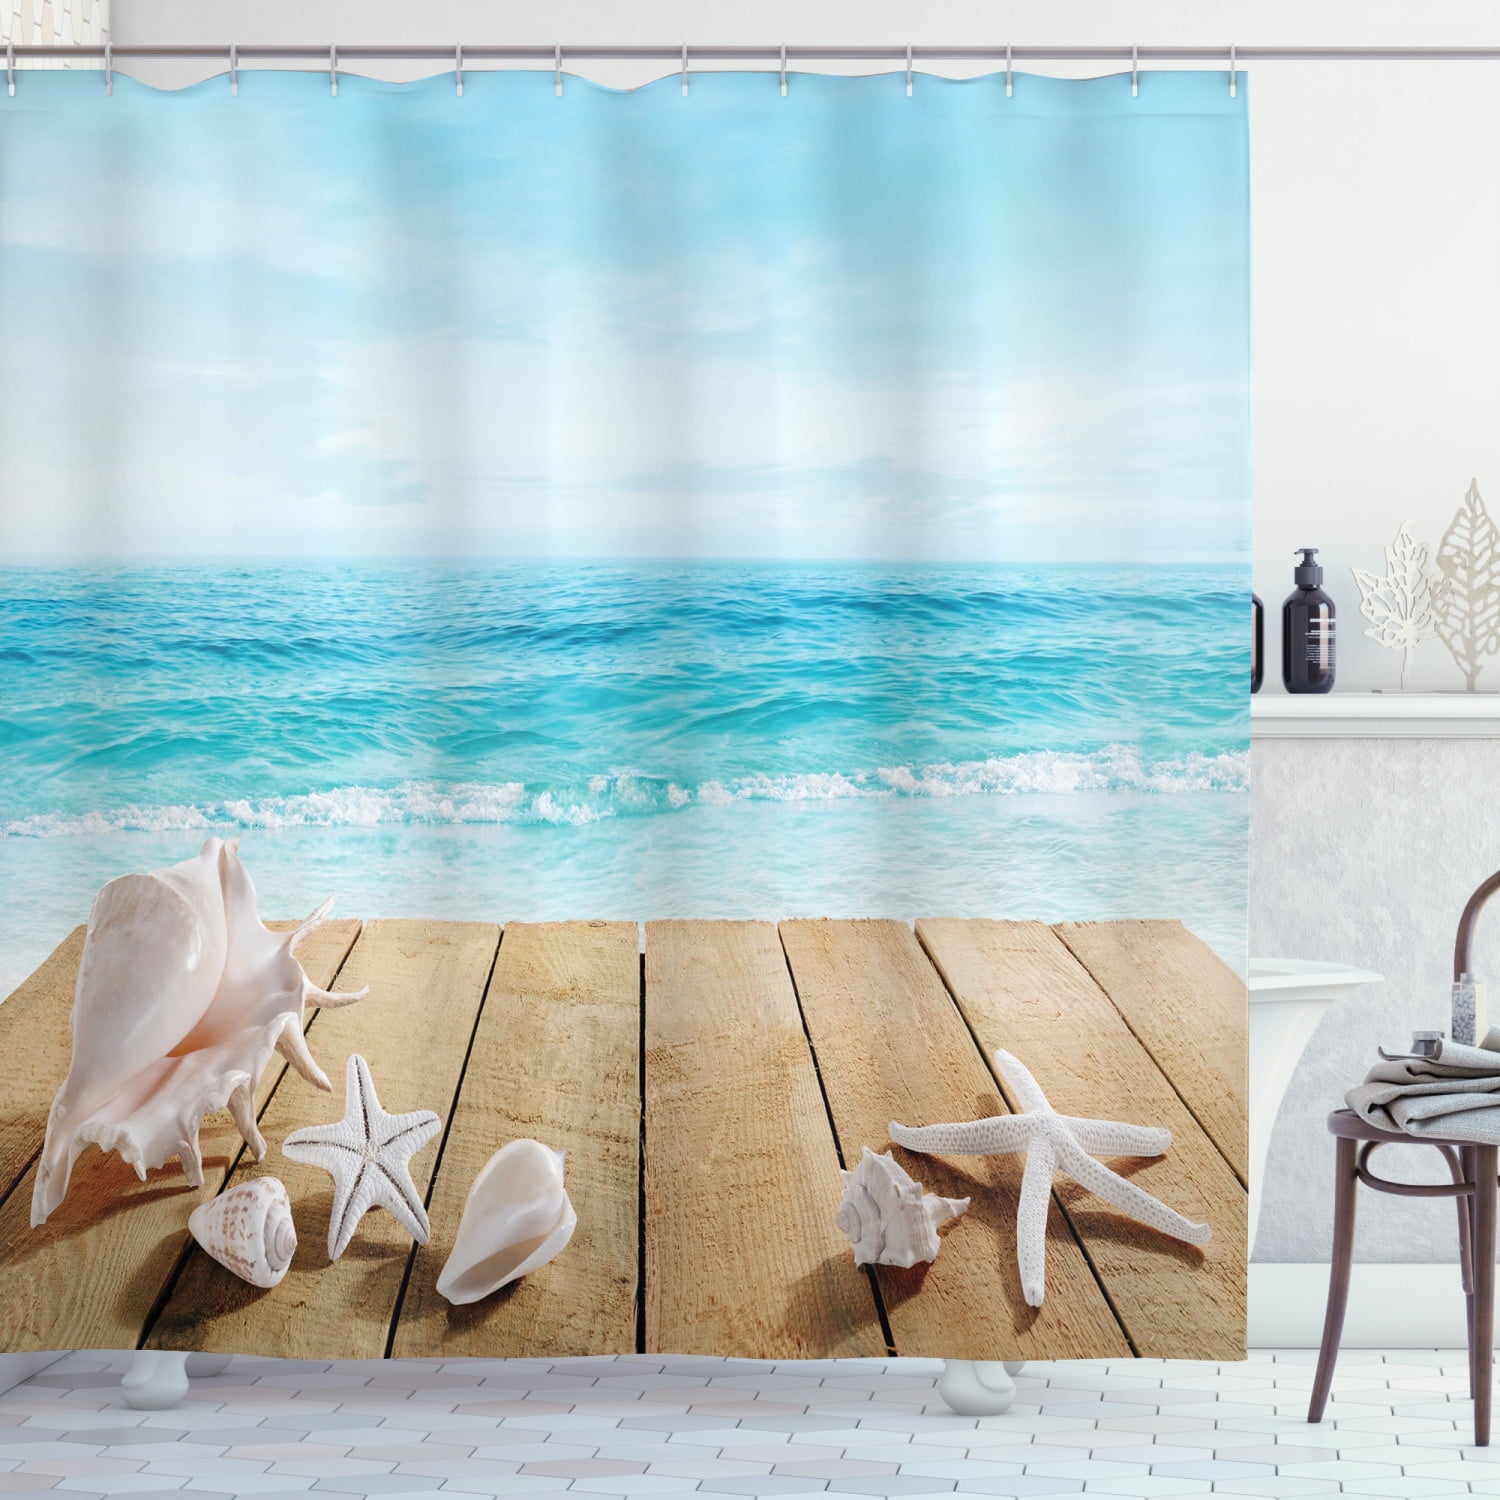 Shower Curtain Liner Seashell Bathroom Home Decor Rings Hooks Ocean Grommets NEW 